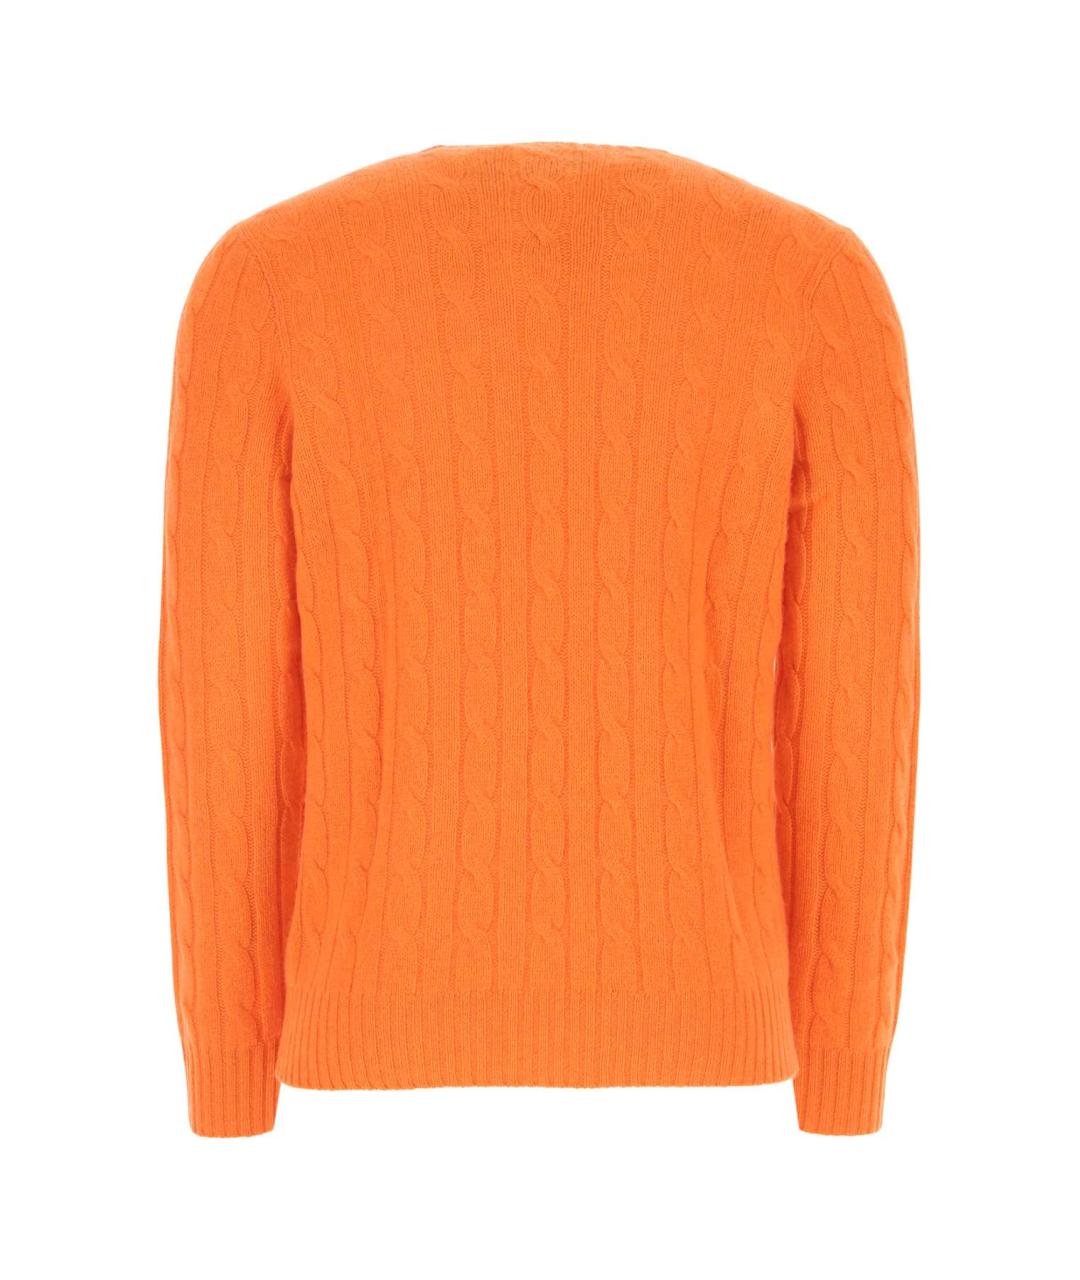 POLO RALPH LAUREN Оранжевый кашемировый джемпер / свитер, фото 2